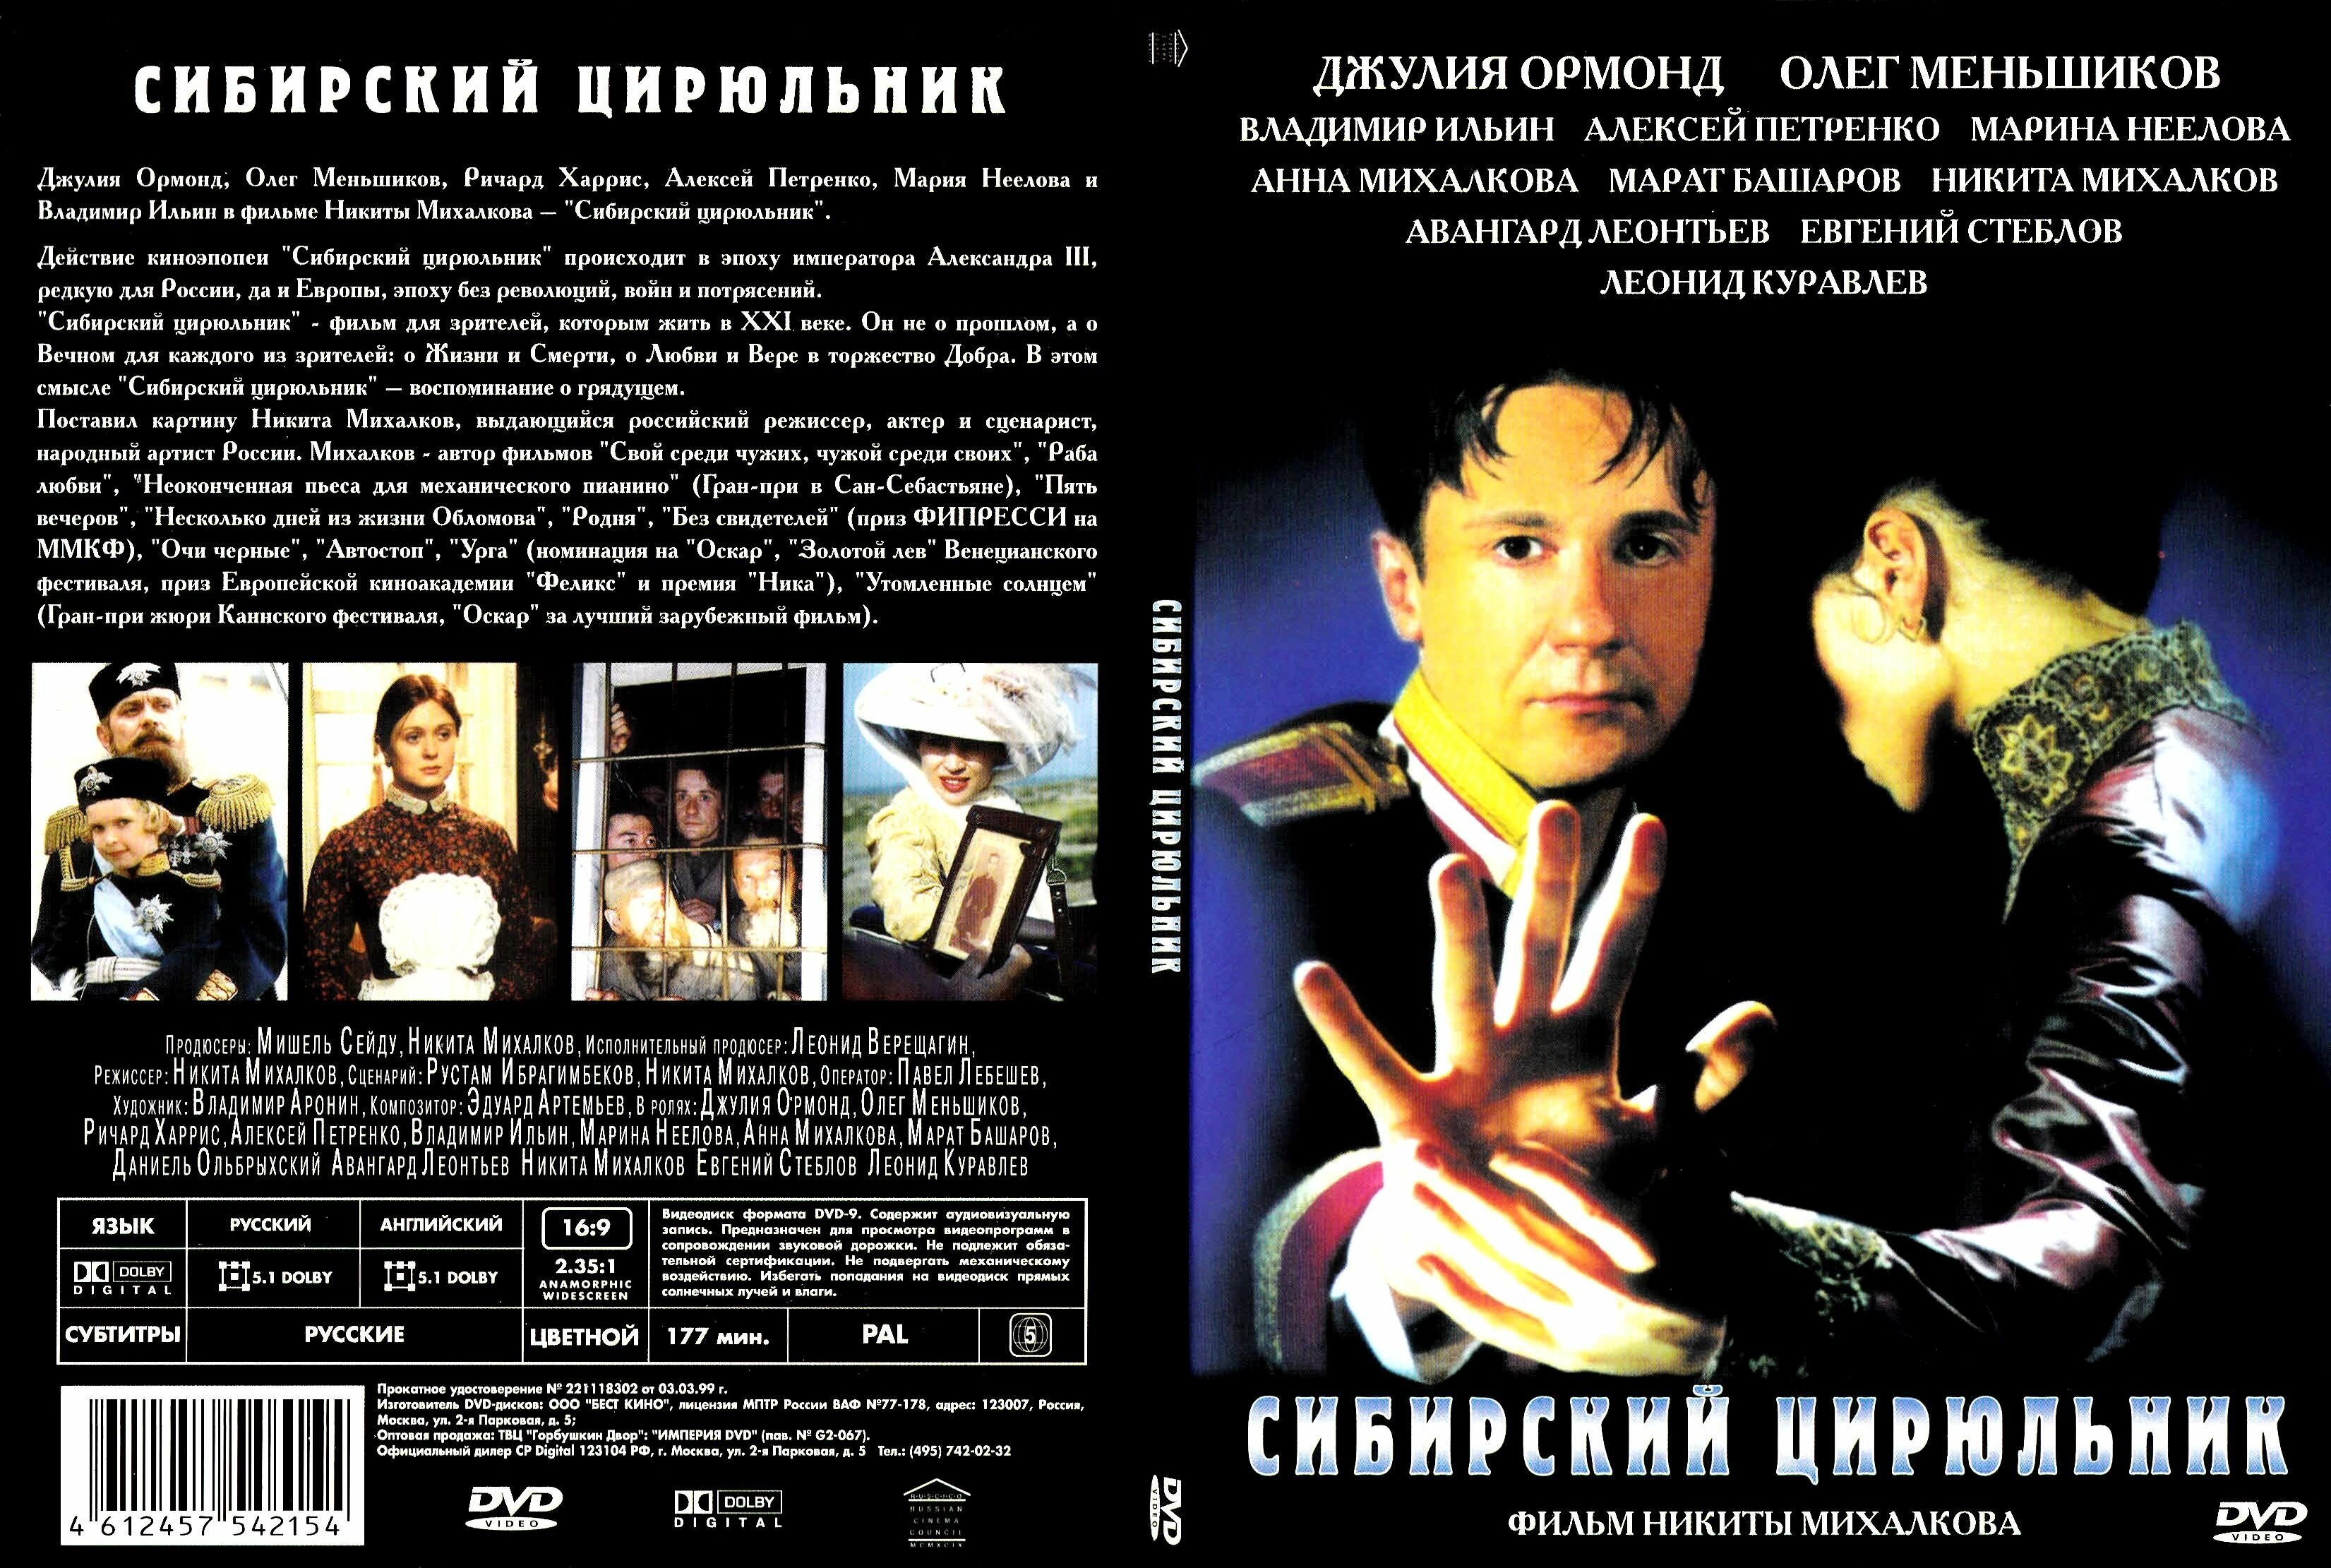 Фильм "Сибирский цирюльник" 1998г. DVD